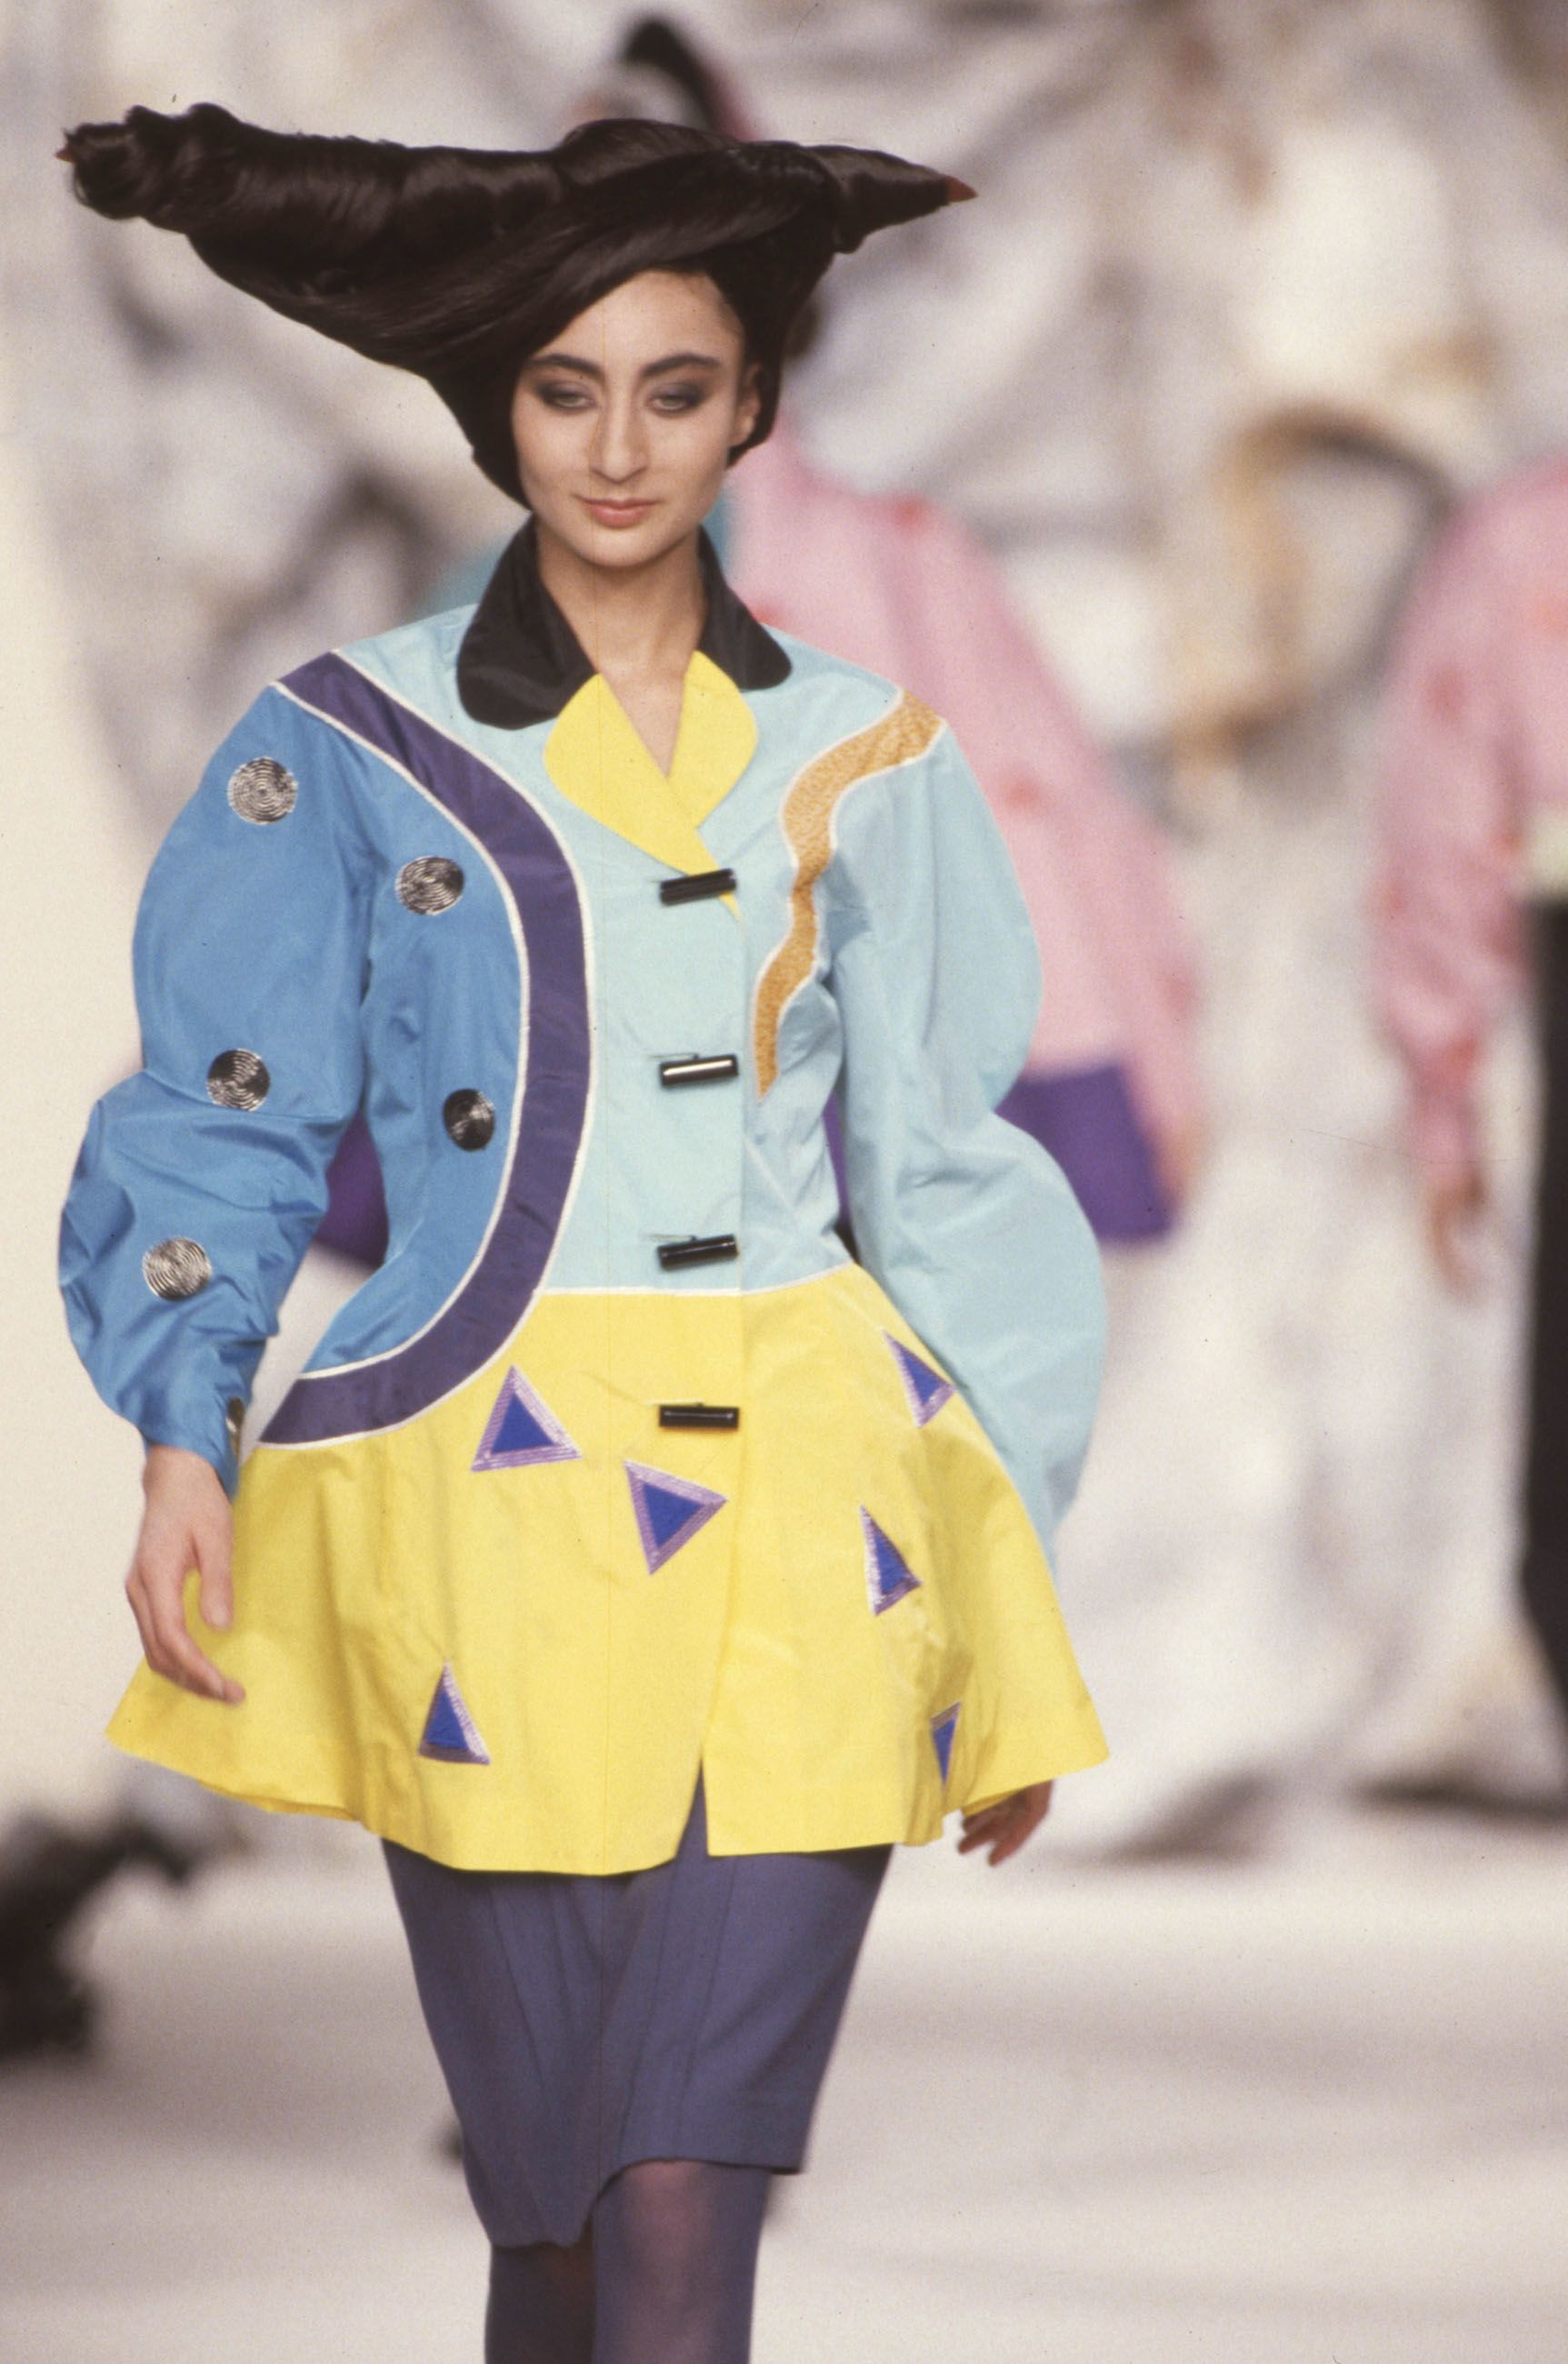 Kansai Yamamoto obituary, Fashion